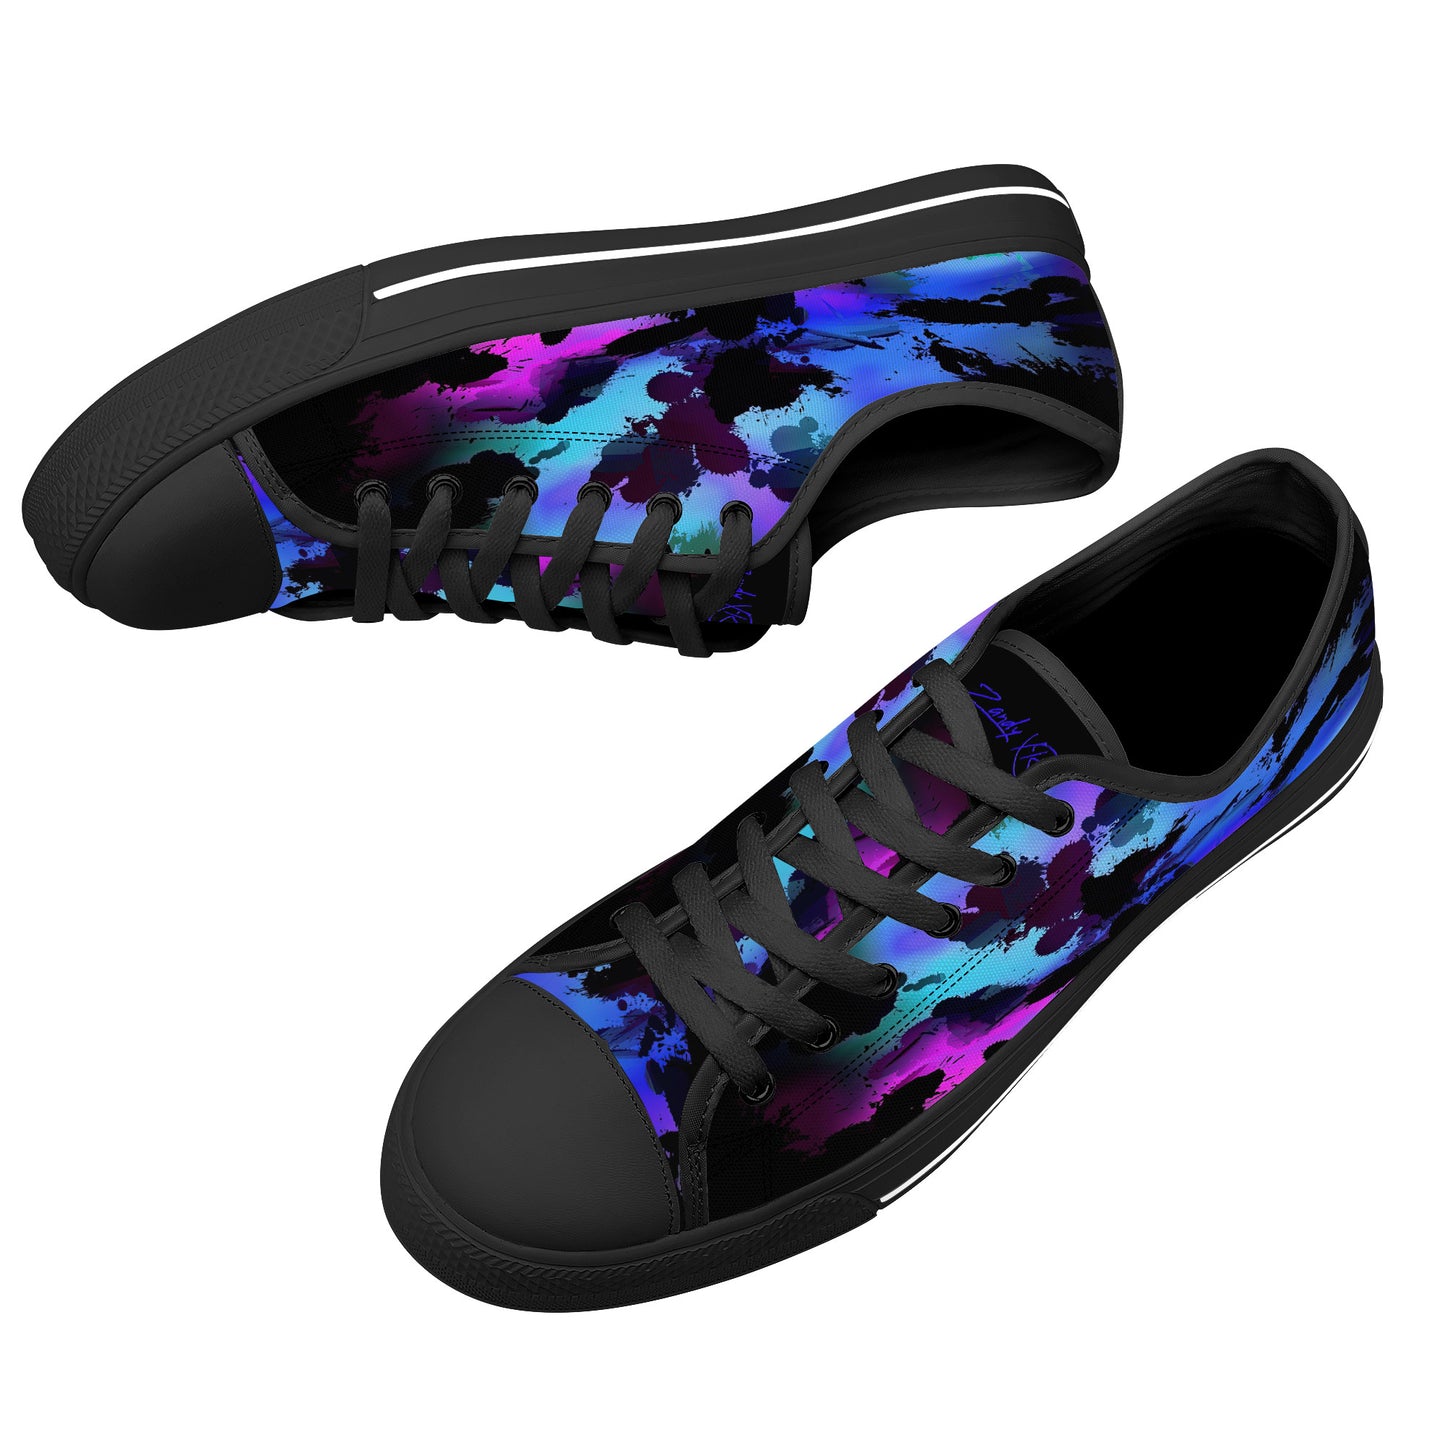 Color Implosion Low-Top Canvas Shoes - Black